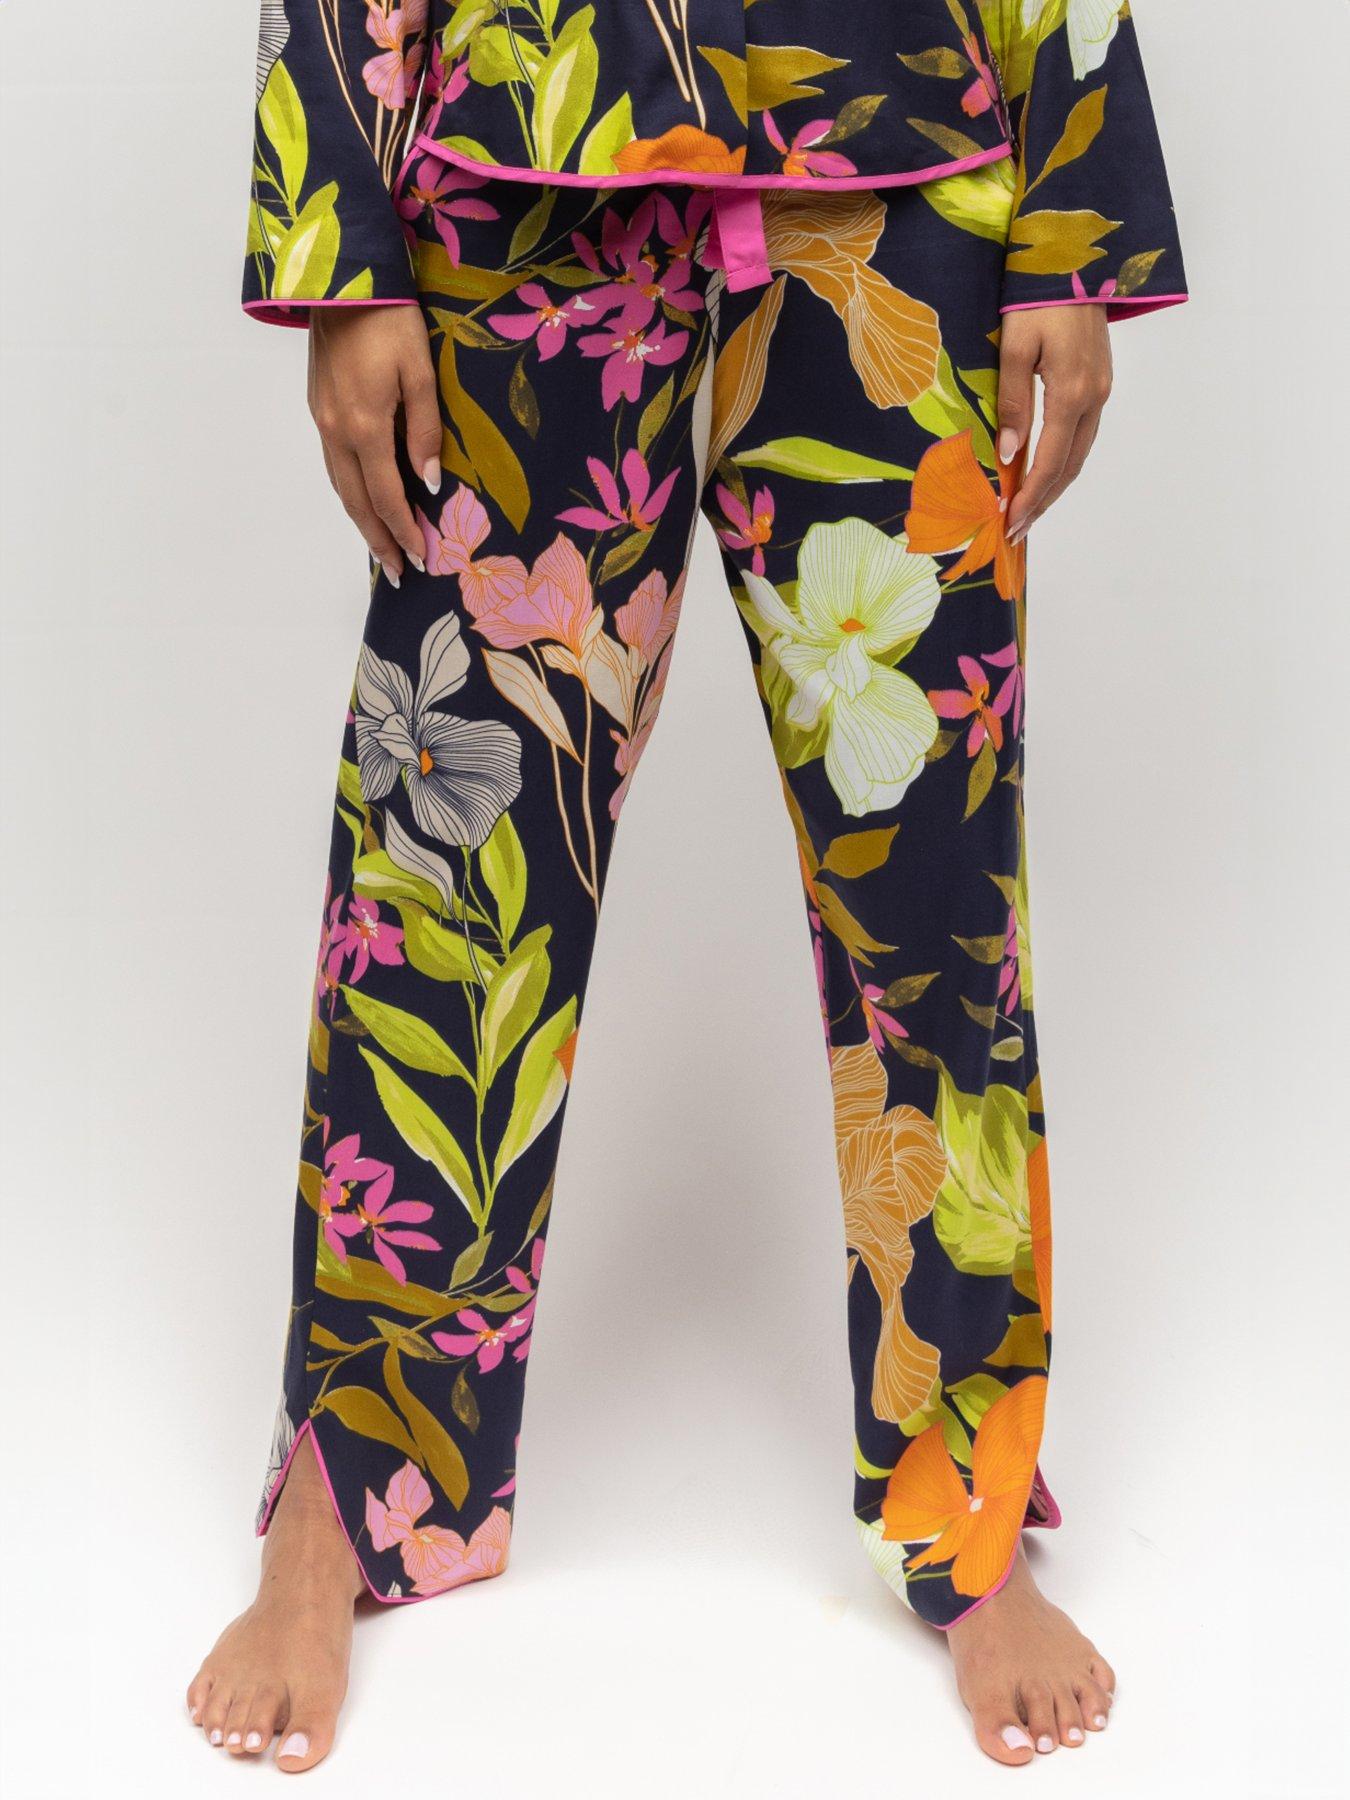 Pyjama Bottoms & Trousers, Women's Loungewear